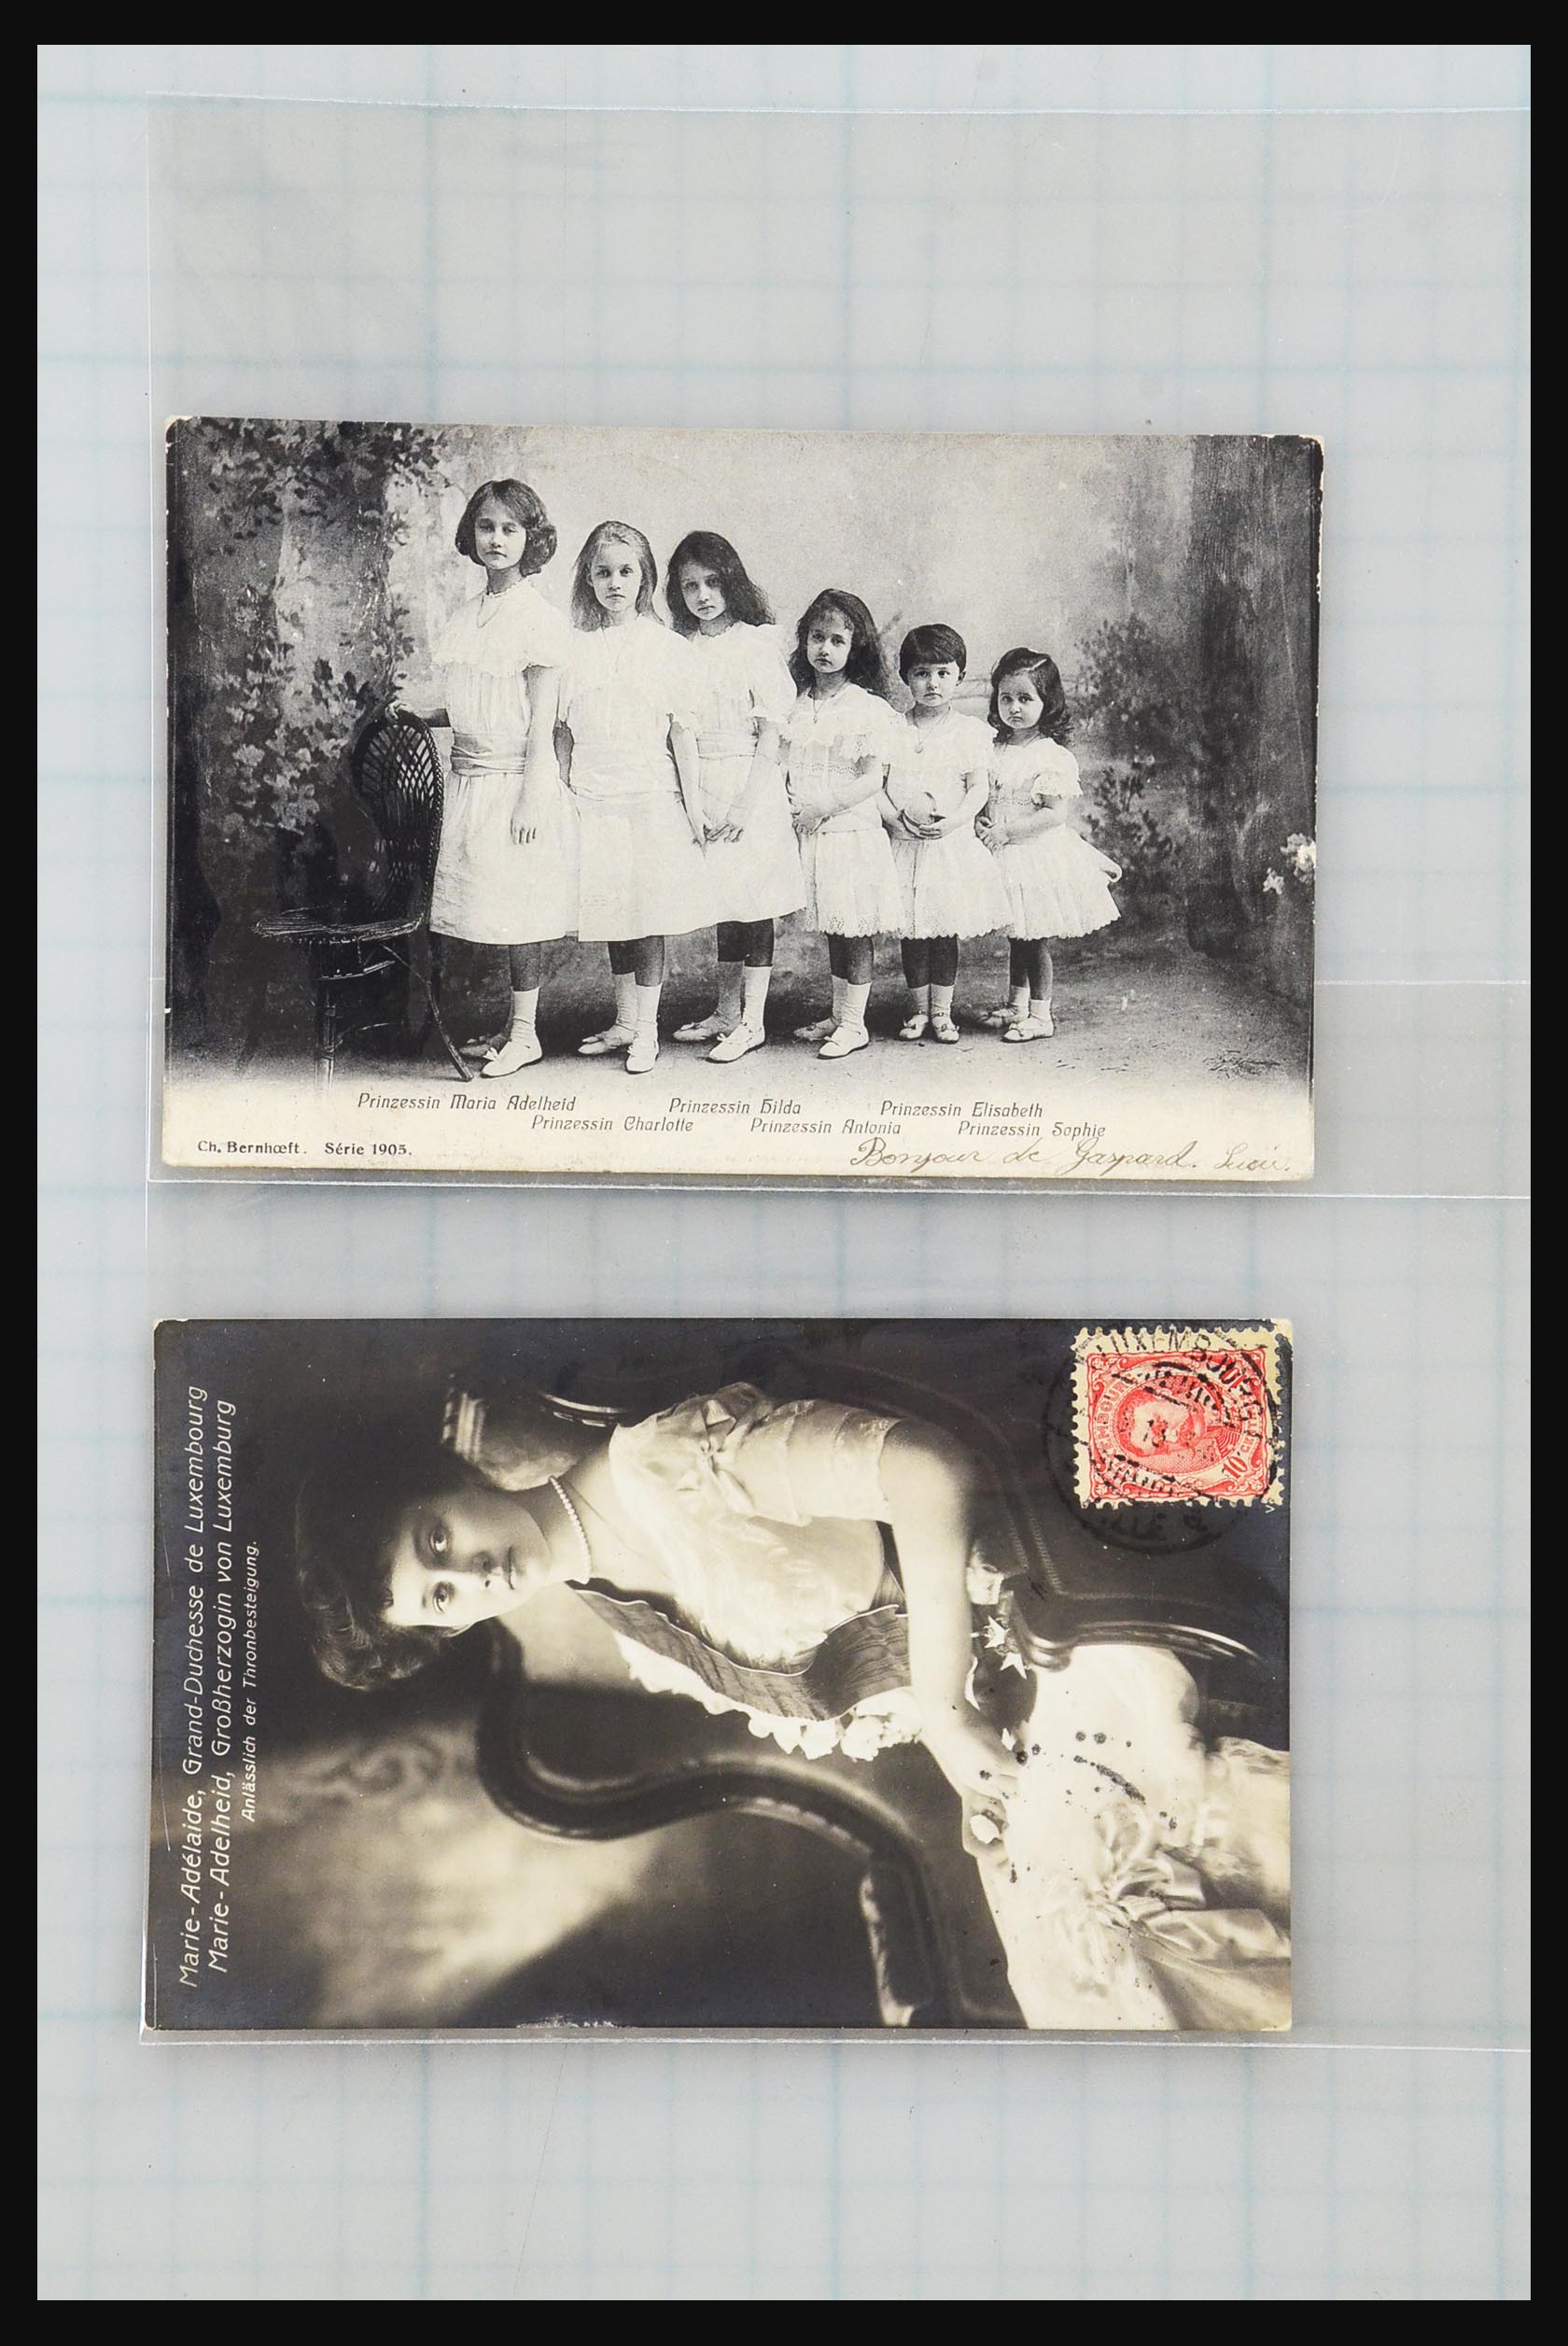 31358 016 - 31358 Portugal/Luxemburg/Griekenland brieven 1880-1960.